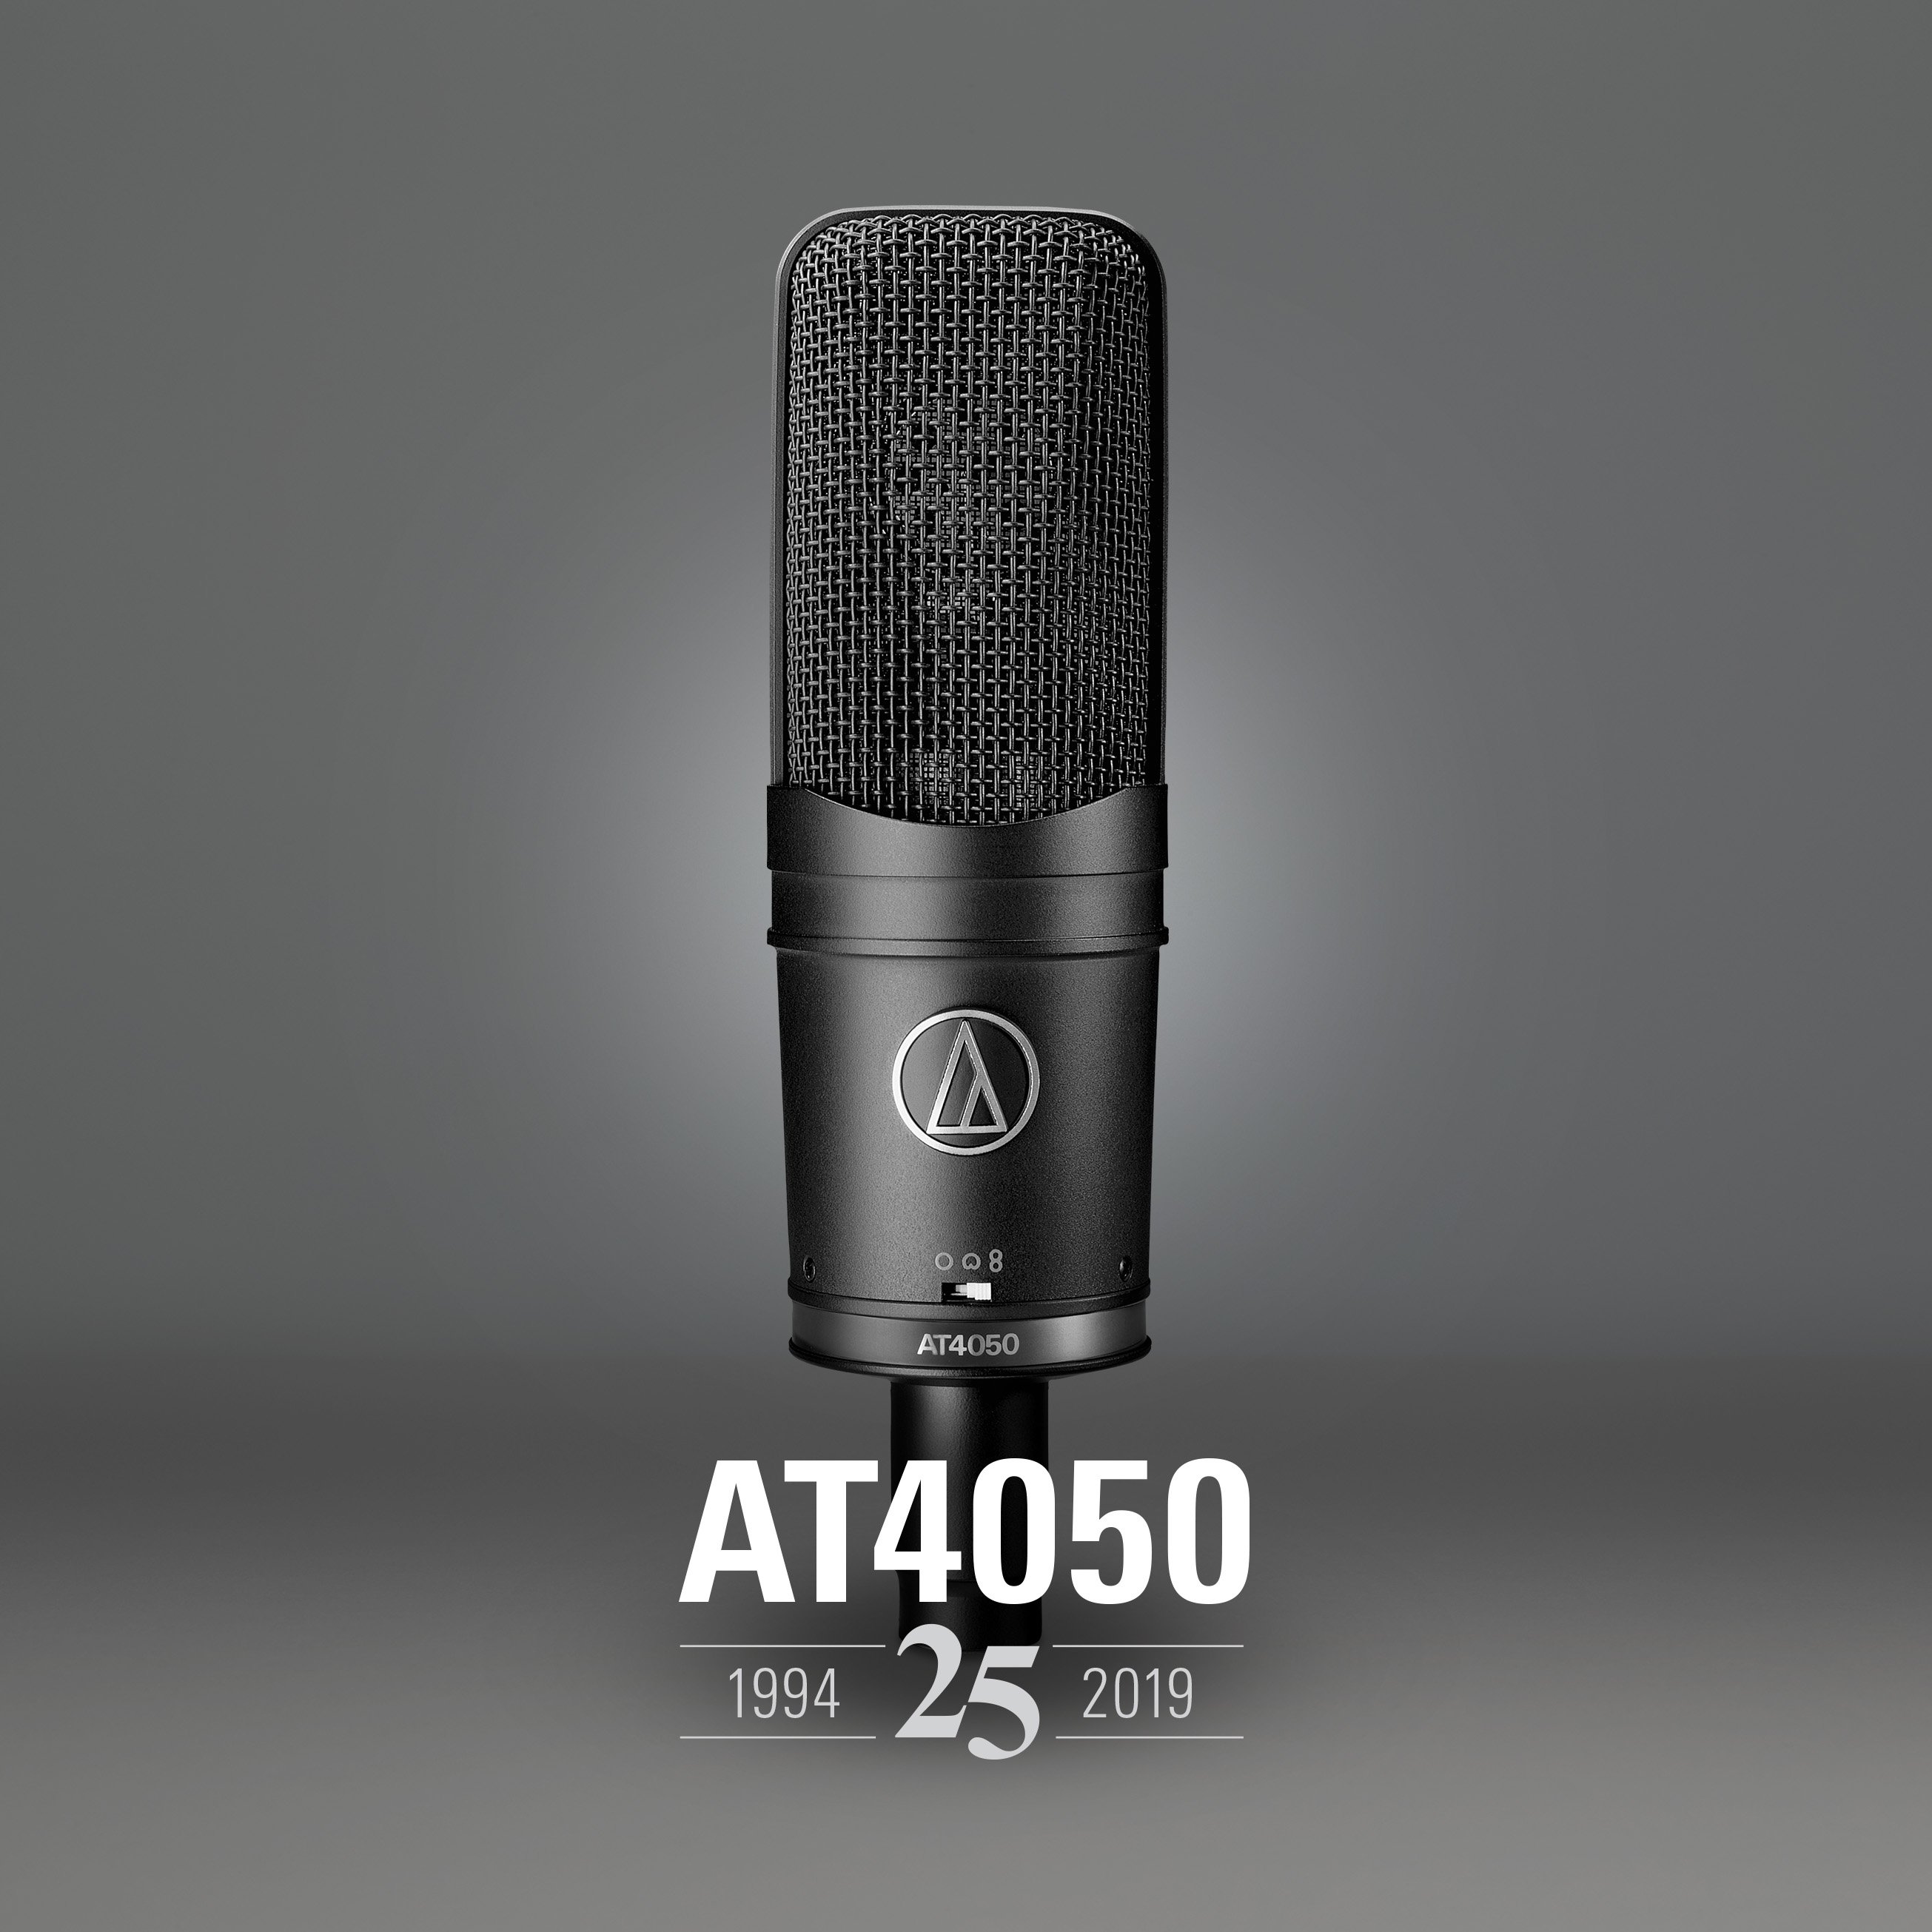 Audio-Technica Celebrates 25th Anniversary of AT4050 Multi-pattern Condenser Microphone